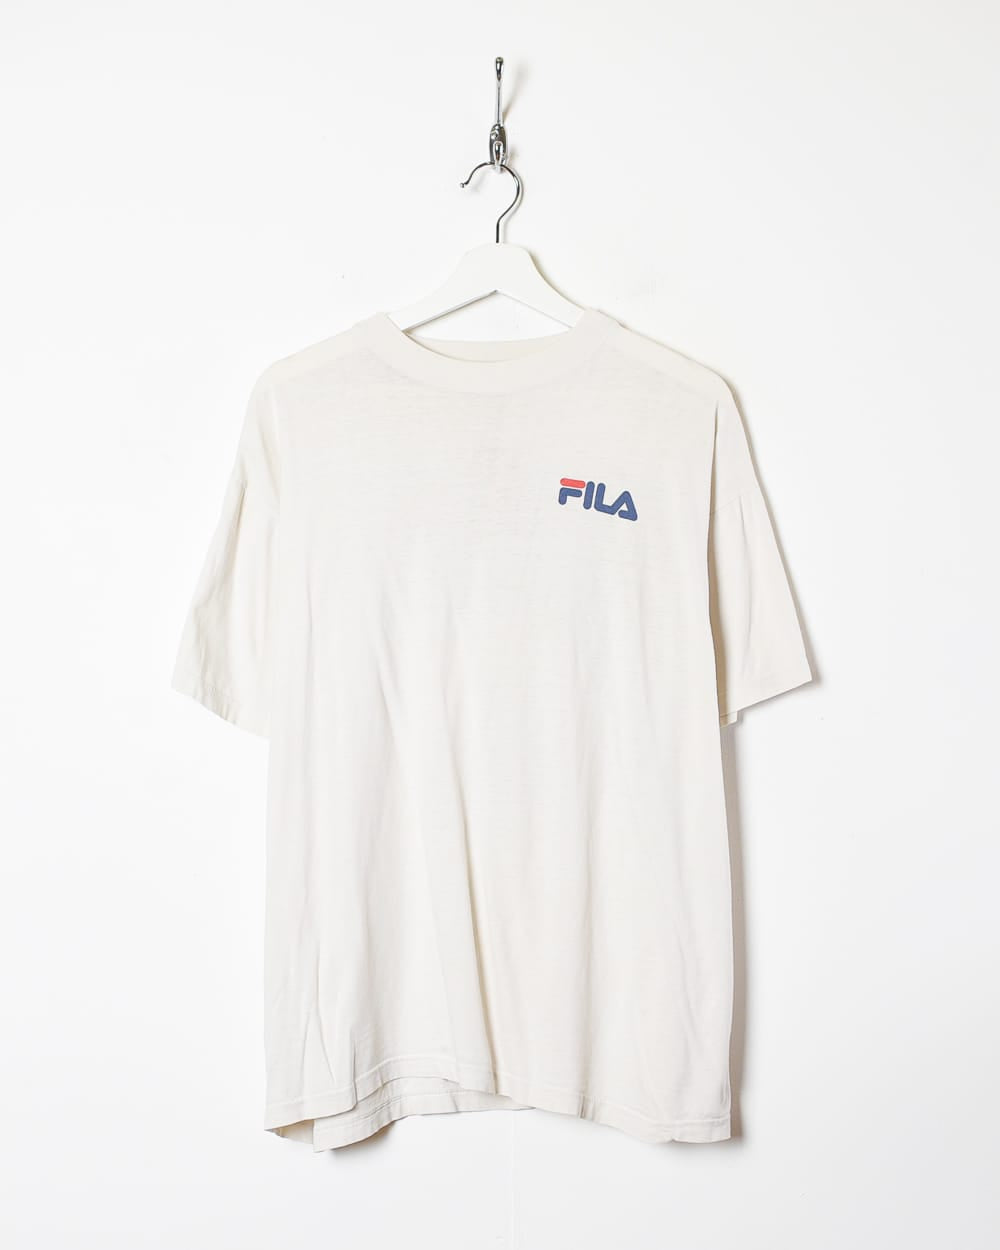 White Fila T-Shirt - Large